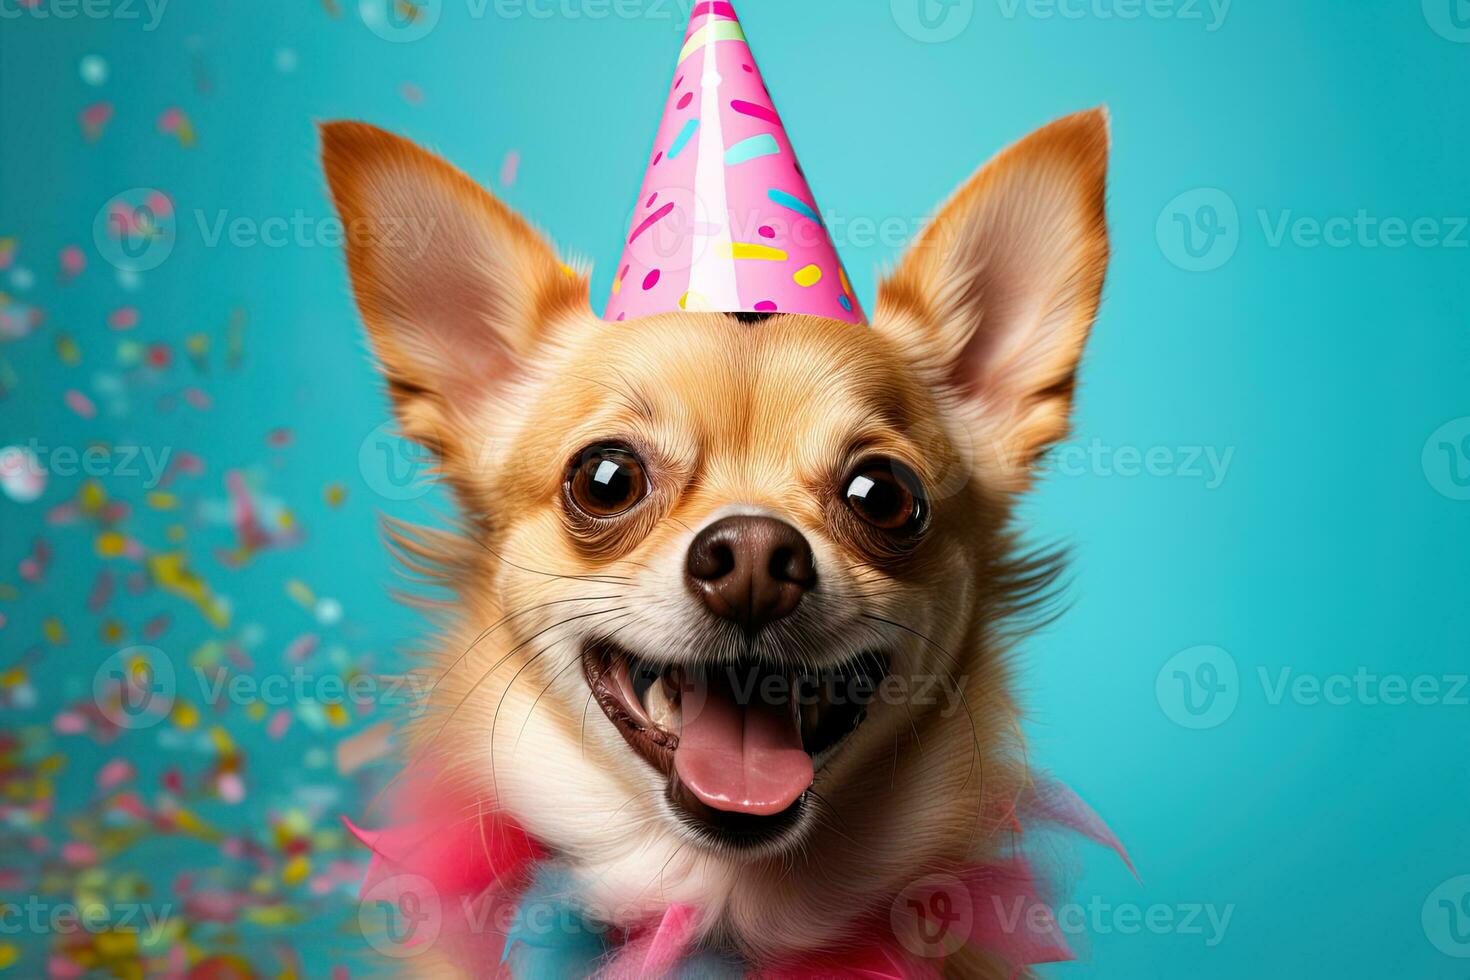 süß bezaubernd Chihuahua lächelnd im ein Rosa Geburtstag Hut auf ein Rosa Hintergrund. Geburtstag Party von Feier Konzept foto